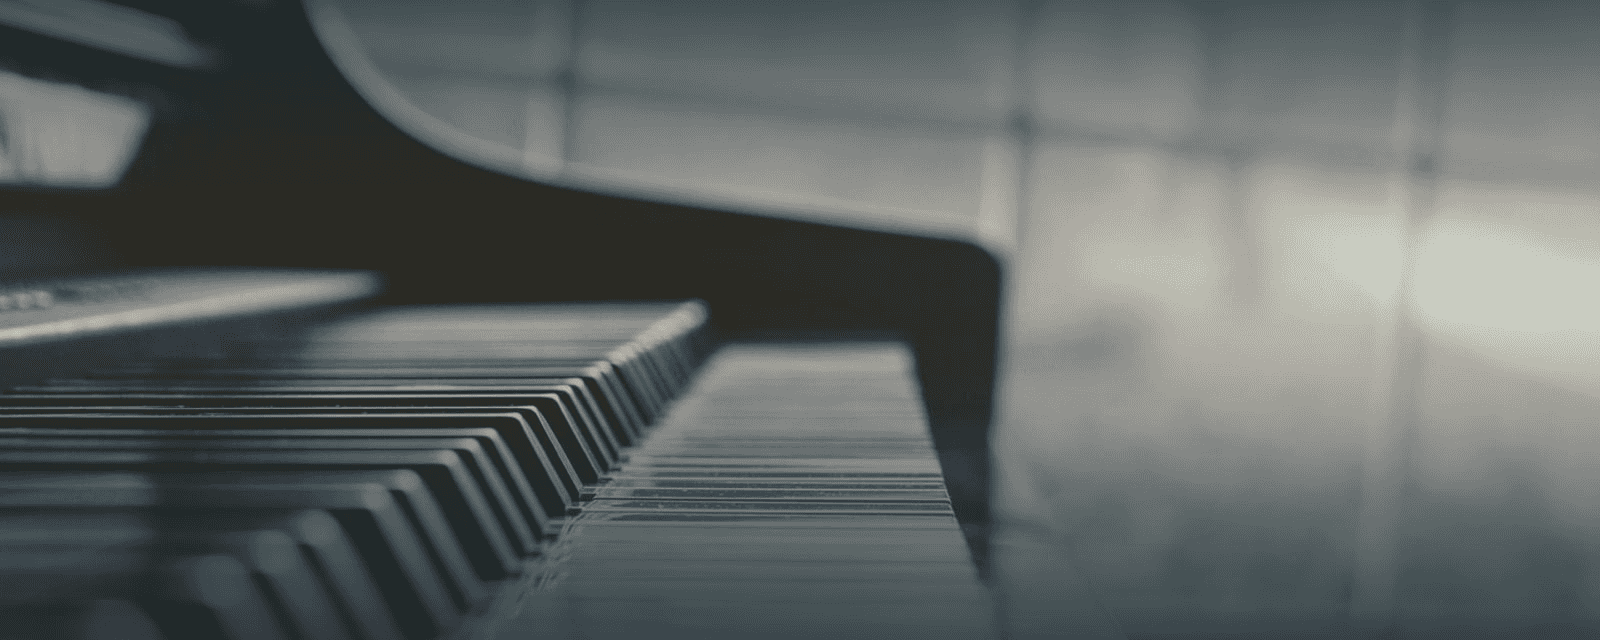 Piano/ Keyboard zu Hause